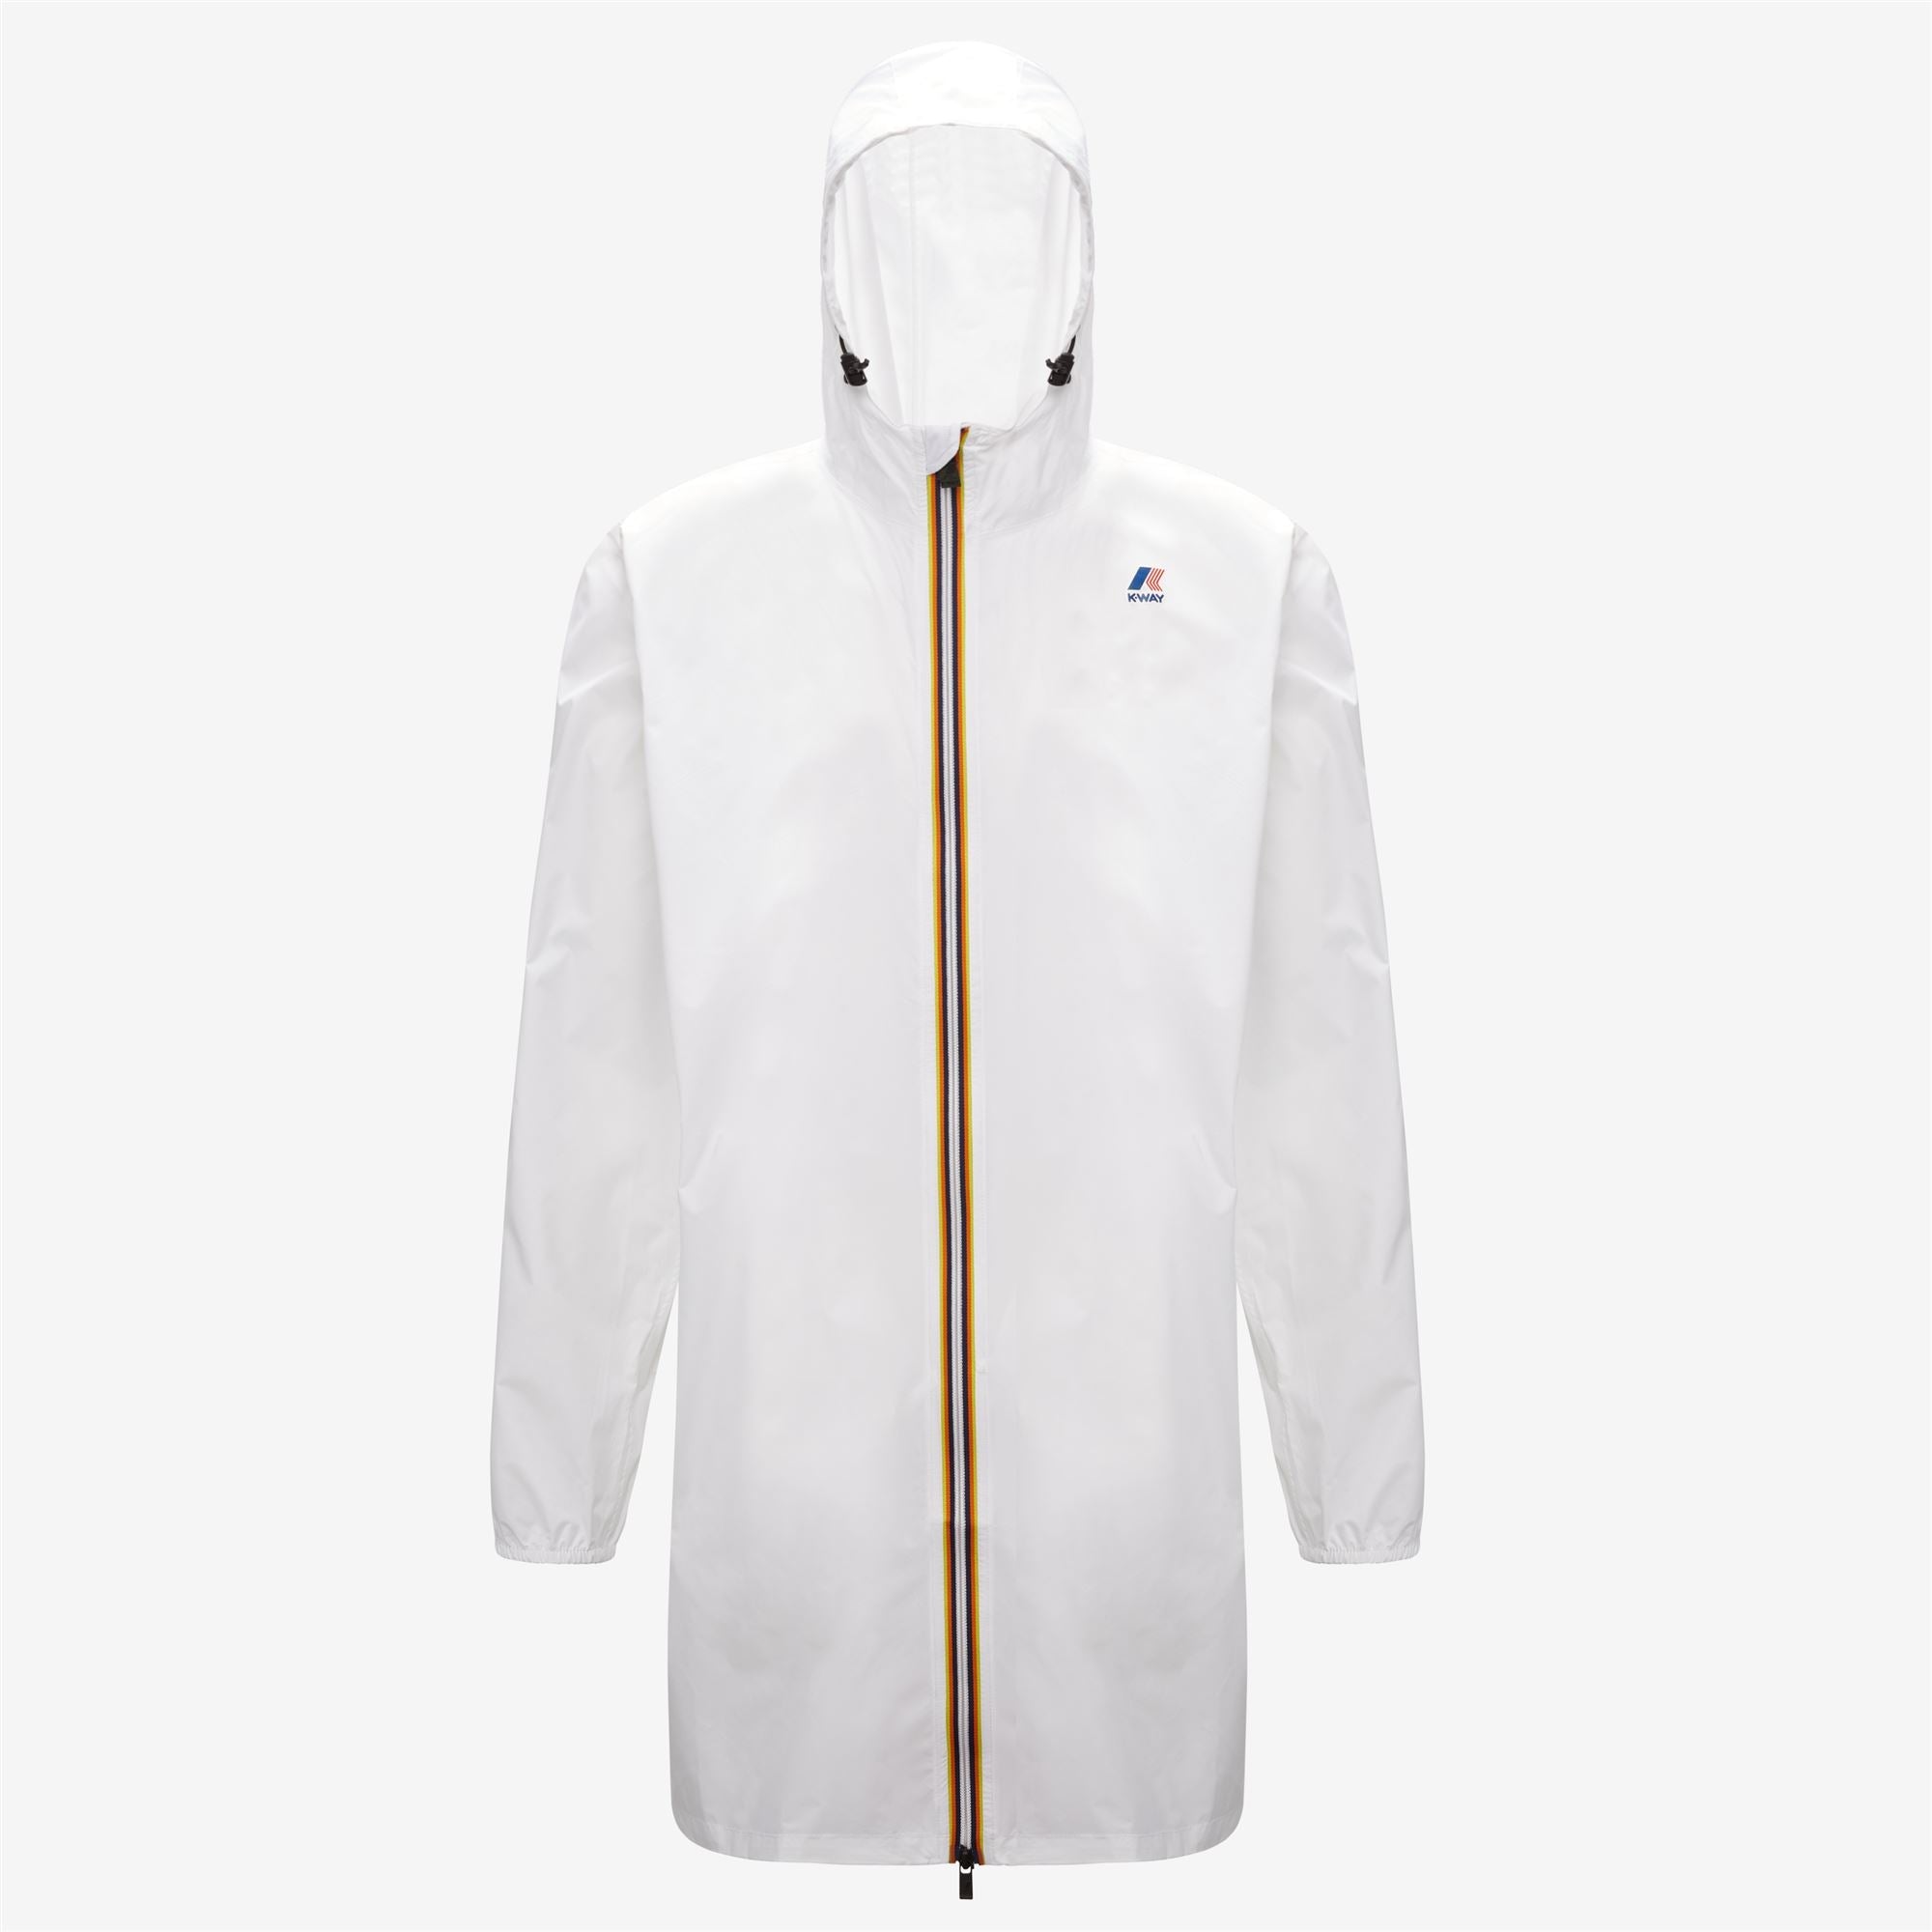 Eiffel - Unisex Waterproof Packable Long Rain Jacket in White